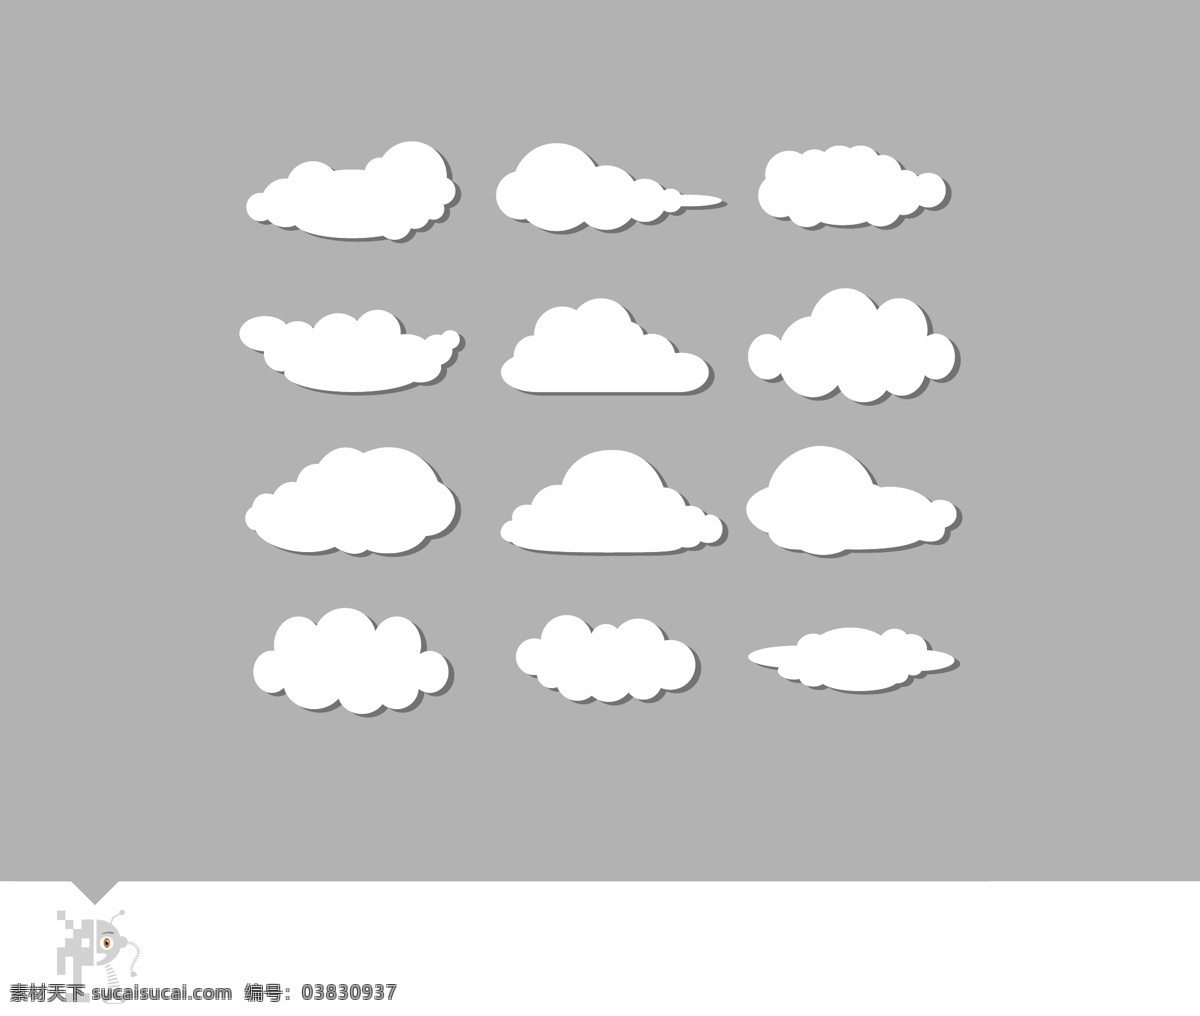 云 云图标 云标志 云logo 云背景 矢量云 云素材 白云云彩 云朵 蓝天白云 白云图标 白云素材 白云logo 白云背景 天气图标 icon图标 气候图标 图标集锦 分层